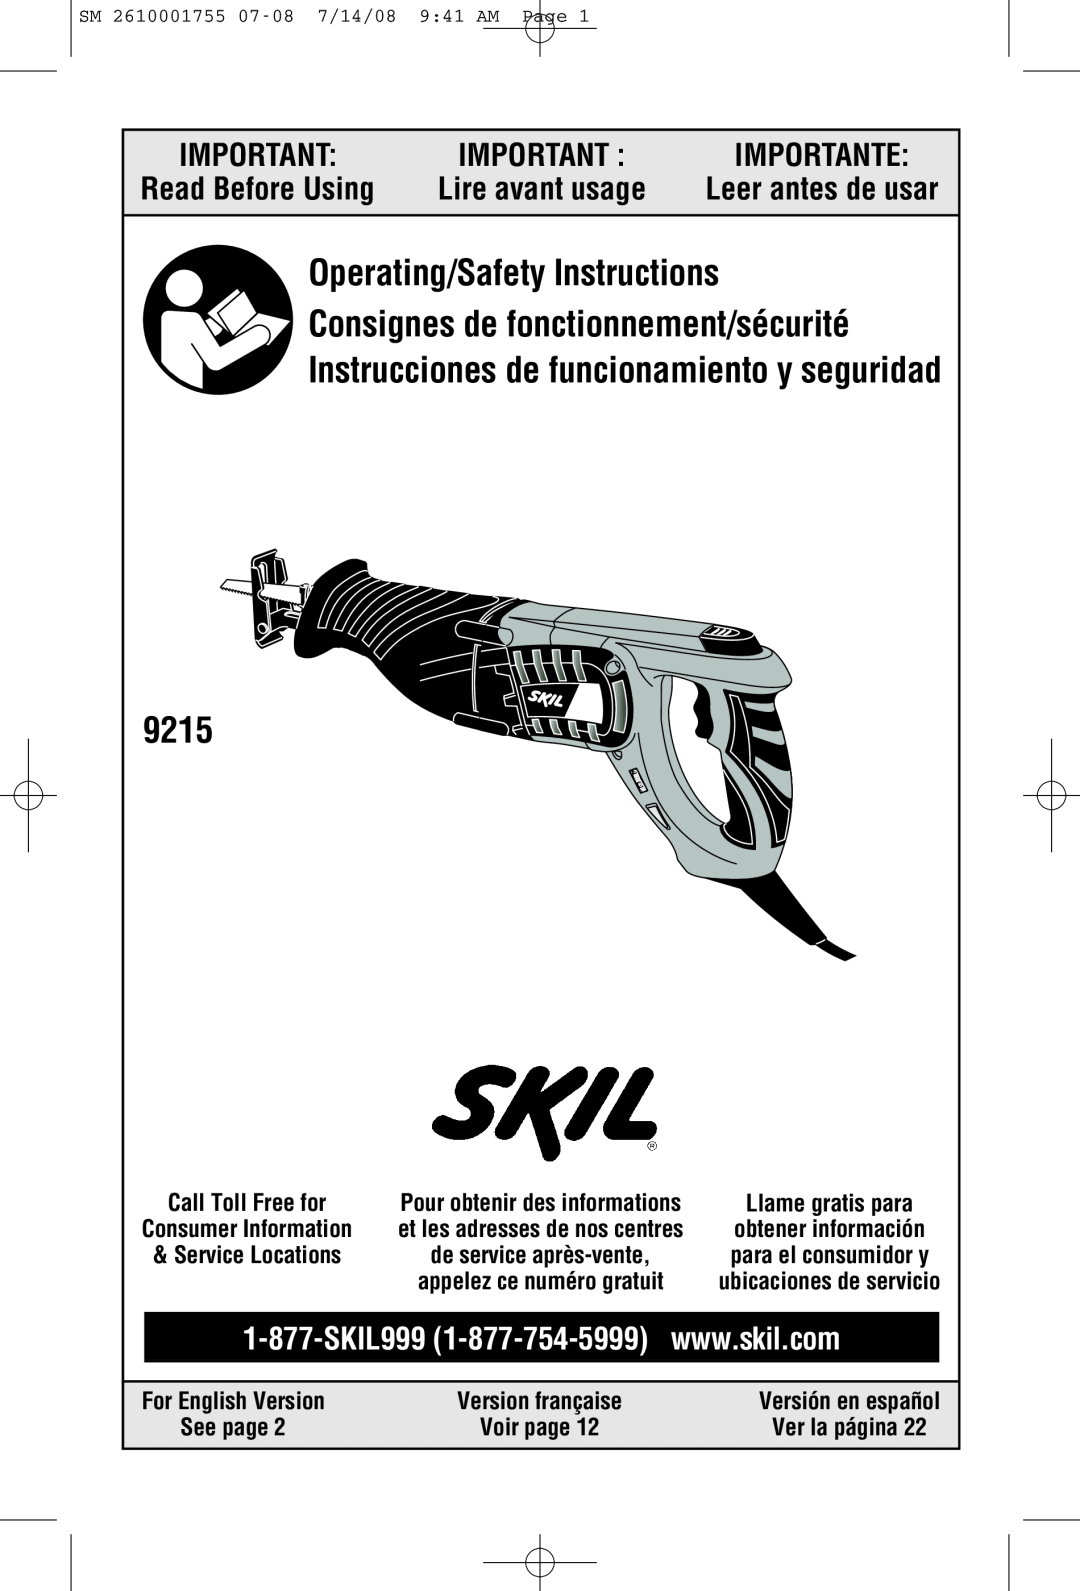 Skil 9215 manual For English Version, Version française, Versión en español, SM 2610001755 07-08 7/14/08 941 AM Page 